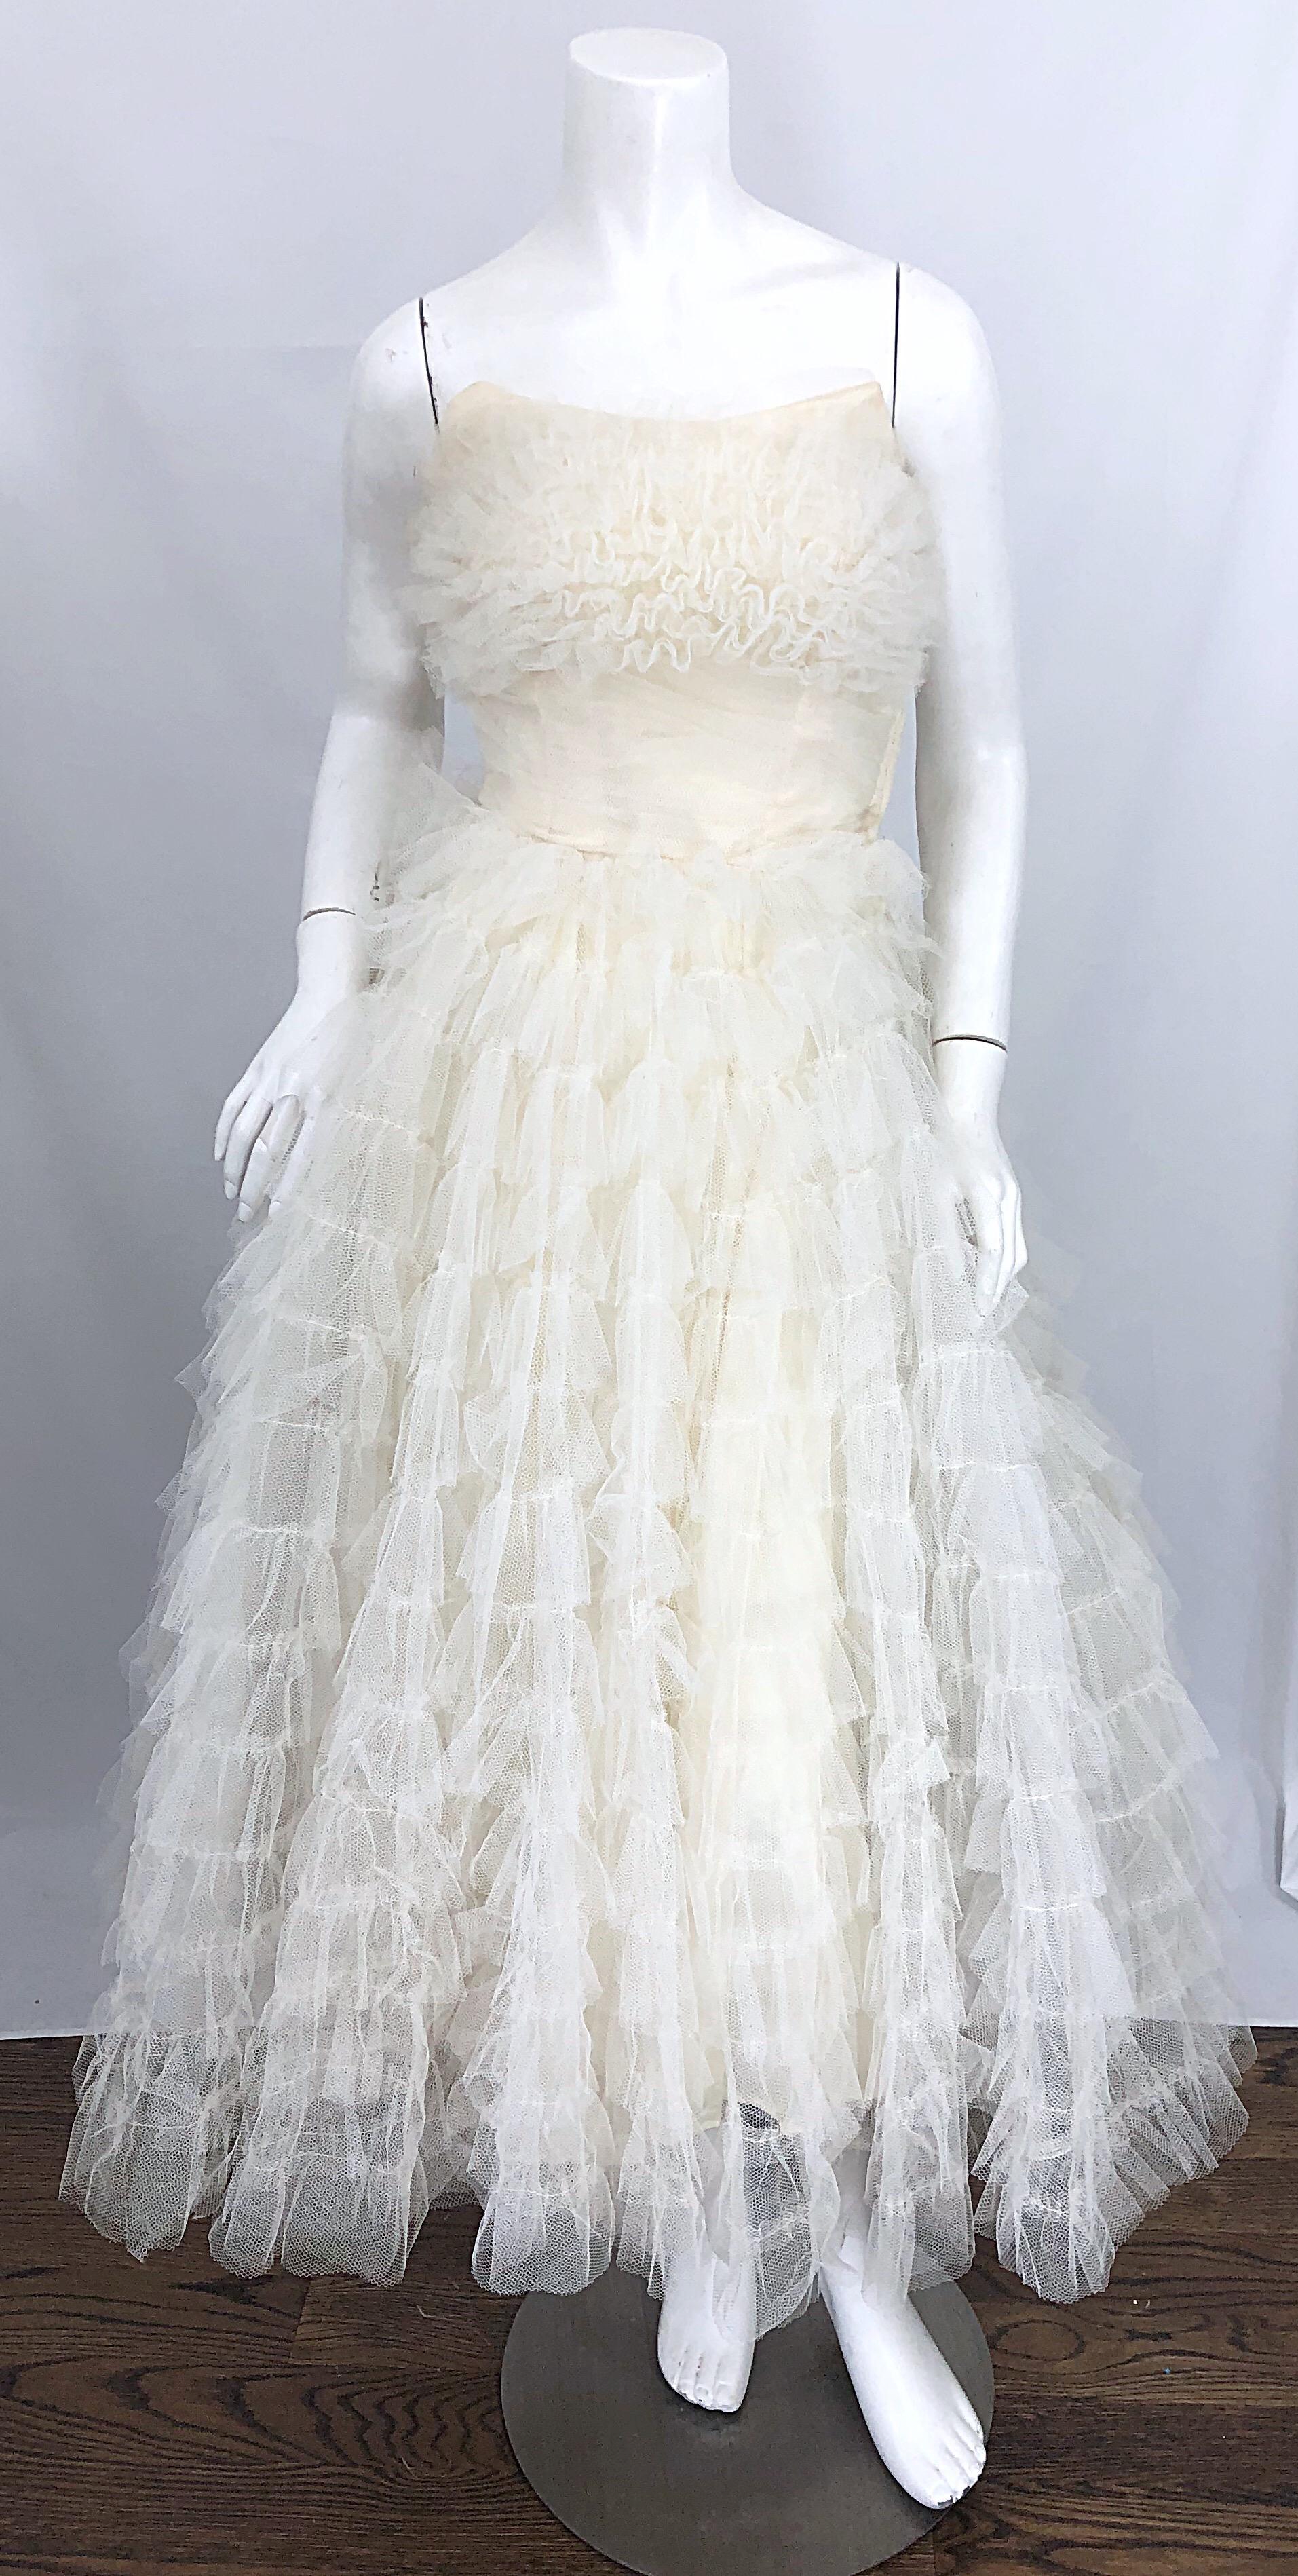 Robe de mariée ou robe de cérémonie en tulle blanc demi-couture des années 1950 à couper le souffle ! Des mètres et des mètres de tulle blanc sont superposés sur la jupe. Le tulle du buste est cousu pour ressembler à des rubans. Avant Garde pointe